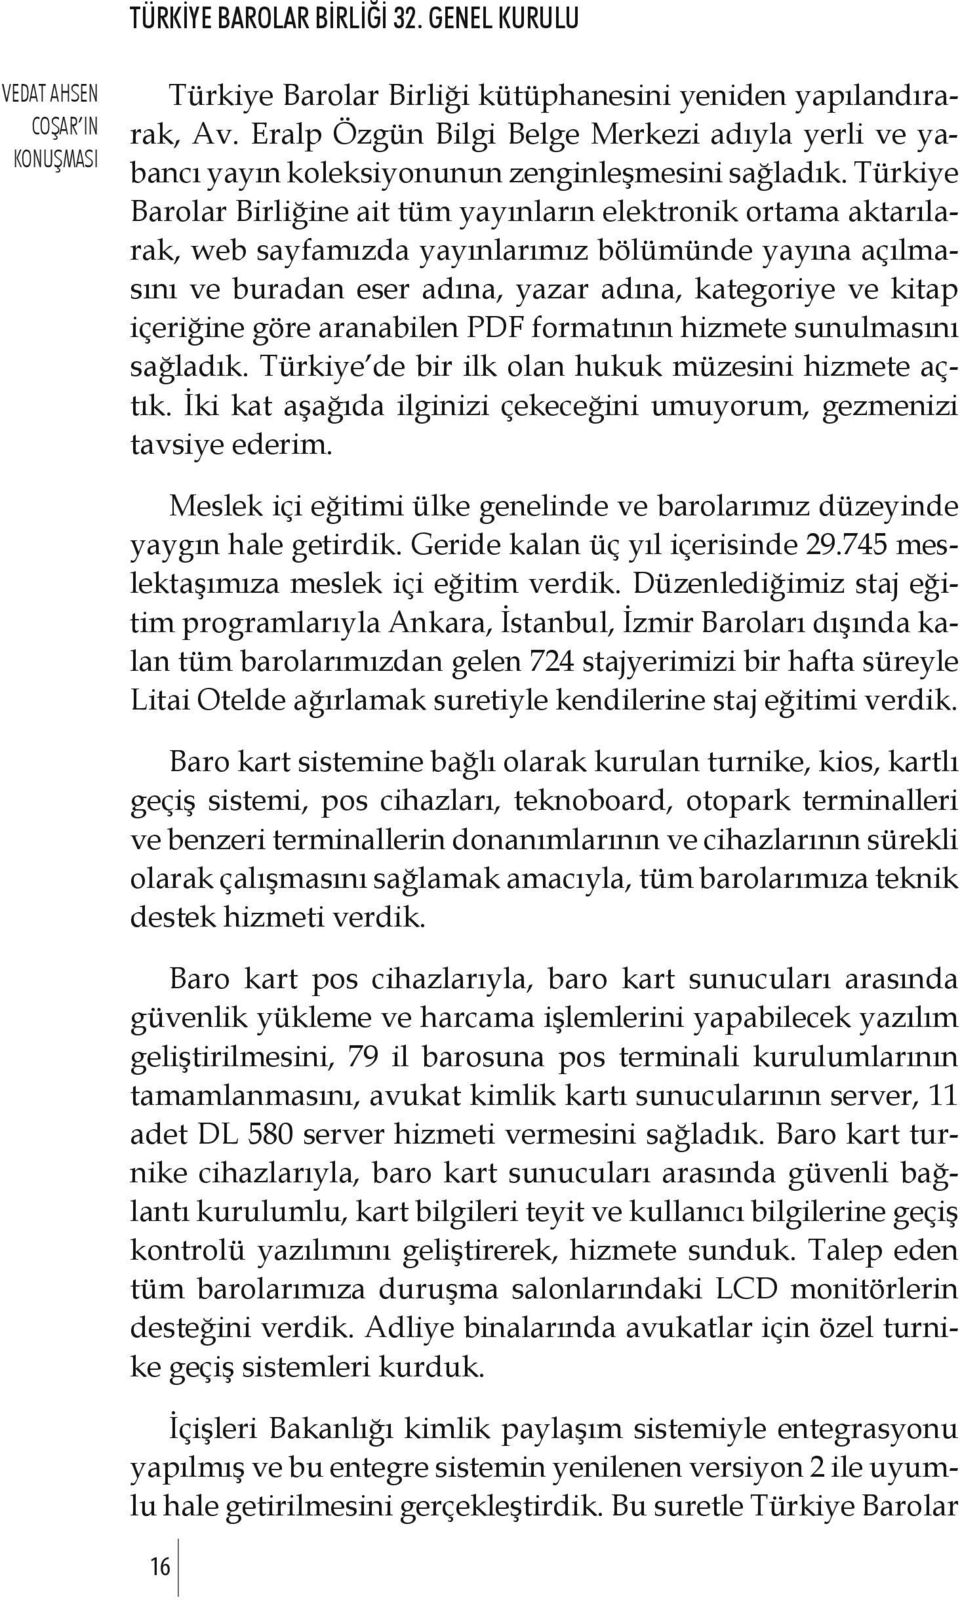 göre aranabilen PDF formatının hizmete sunulmasını sağladık. Türkiye de bir ilk olan hukuk müzesini hizmete açtık. İki kat aşağıda ilginizi çekeceğini umuyorum, gezmenizi tavsiye ederim.